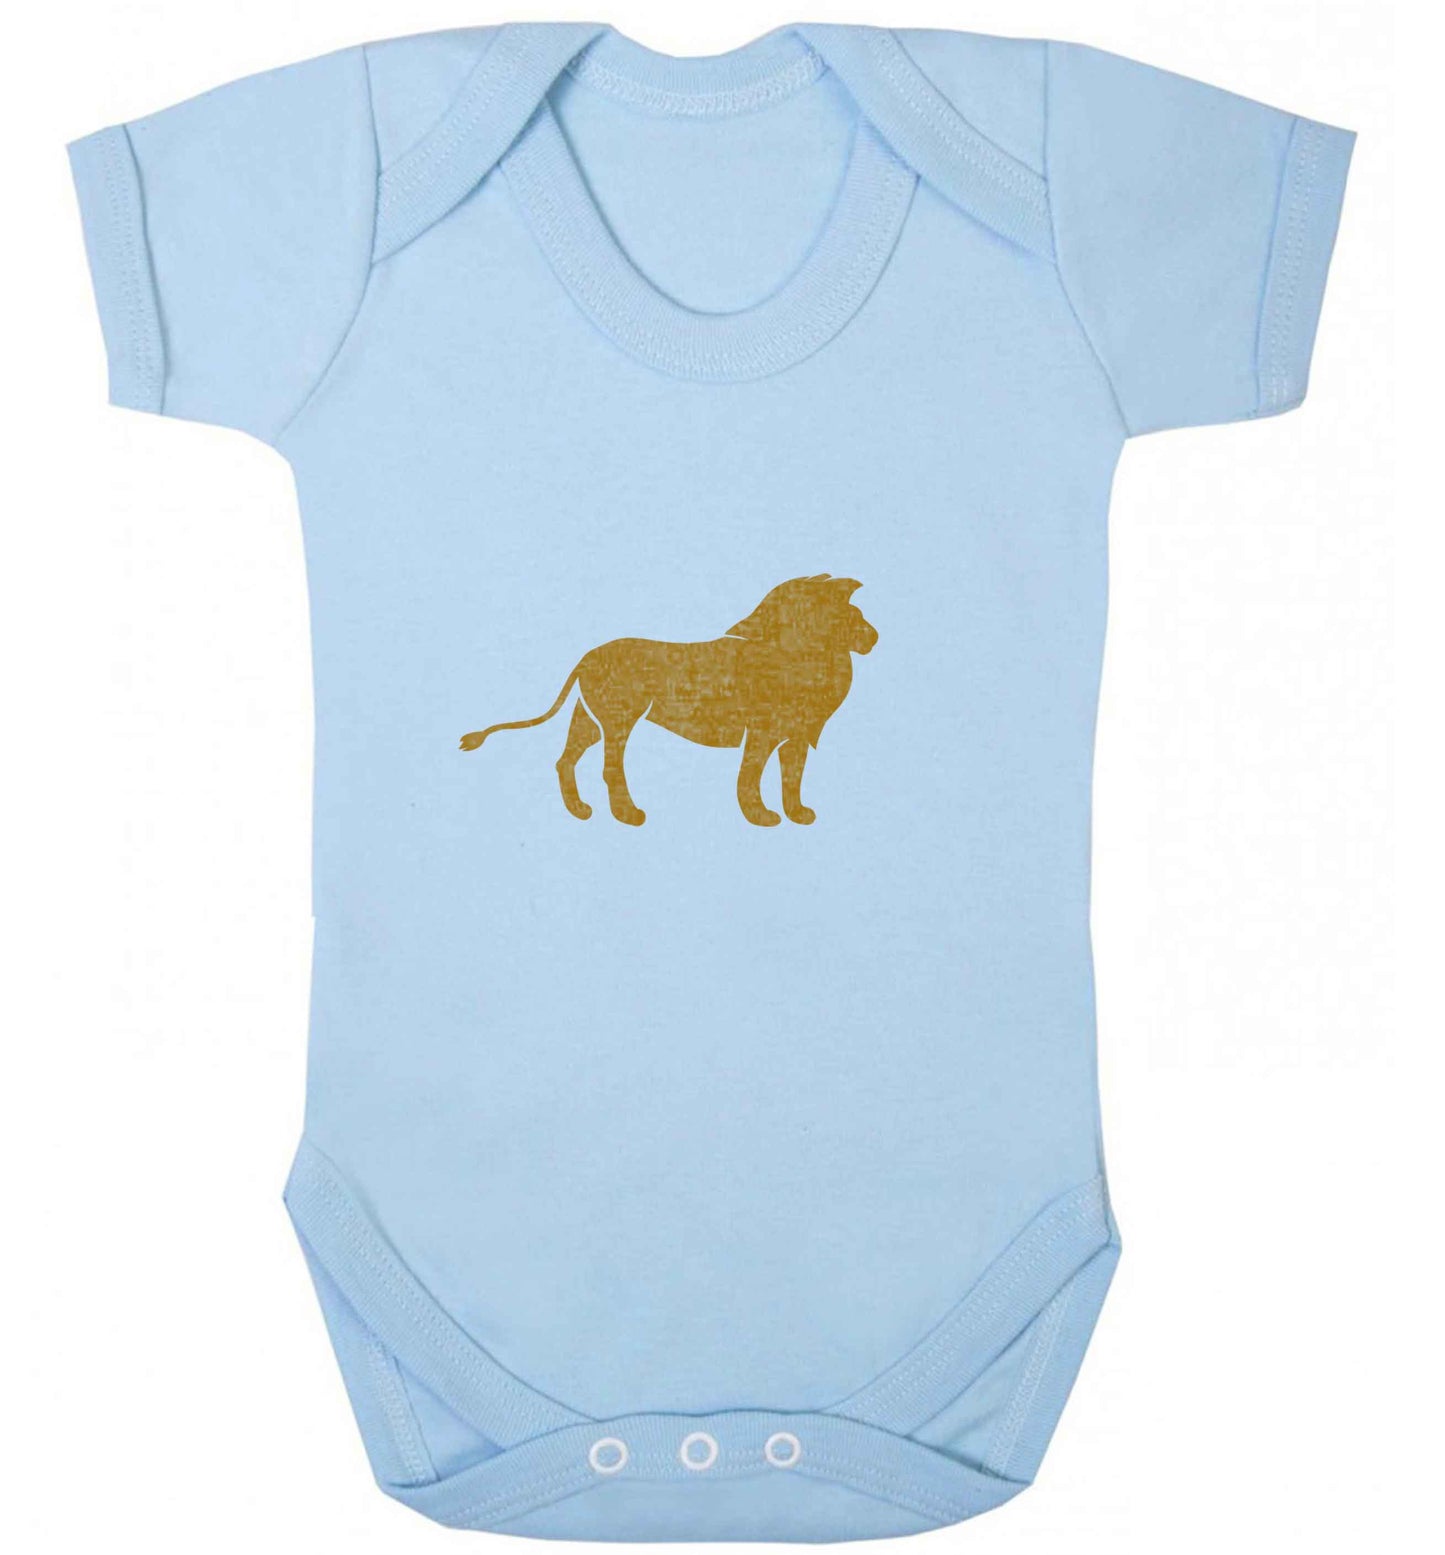 Gold lion baby vest pale blue 18-24 months